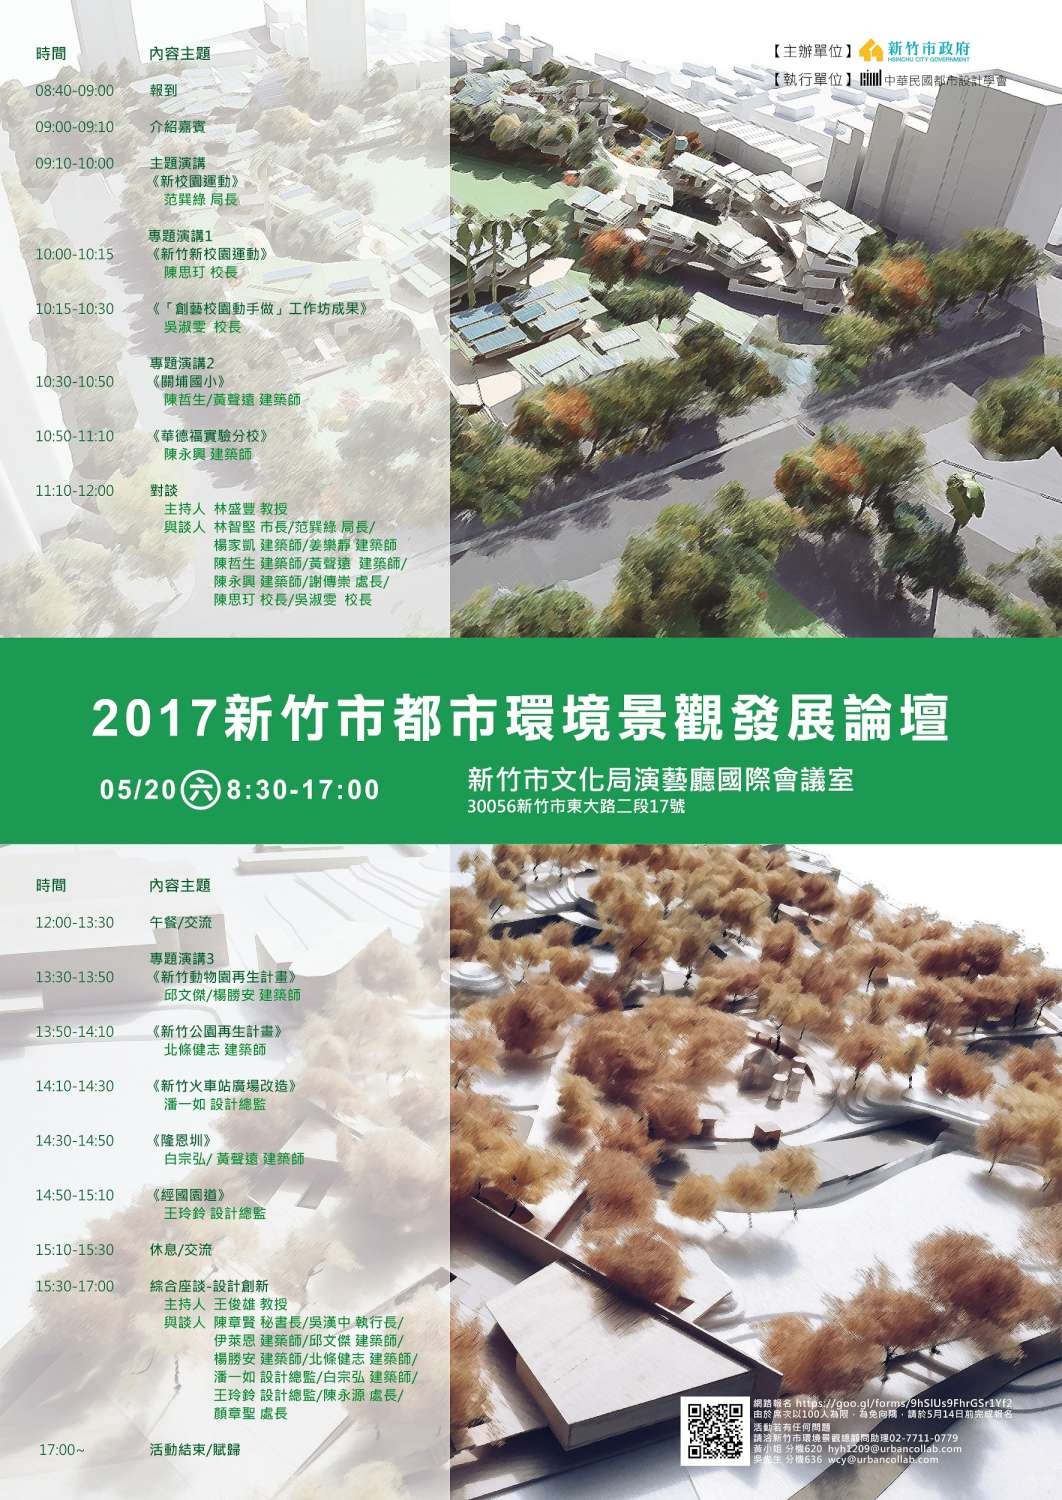 竹市都市環境景觀發展論壇20日登場 范巽綠、吳漢中及多位知名建築師齊聚|論壇活動海報